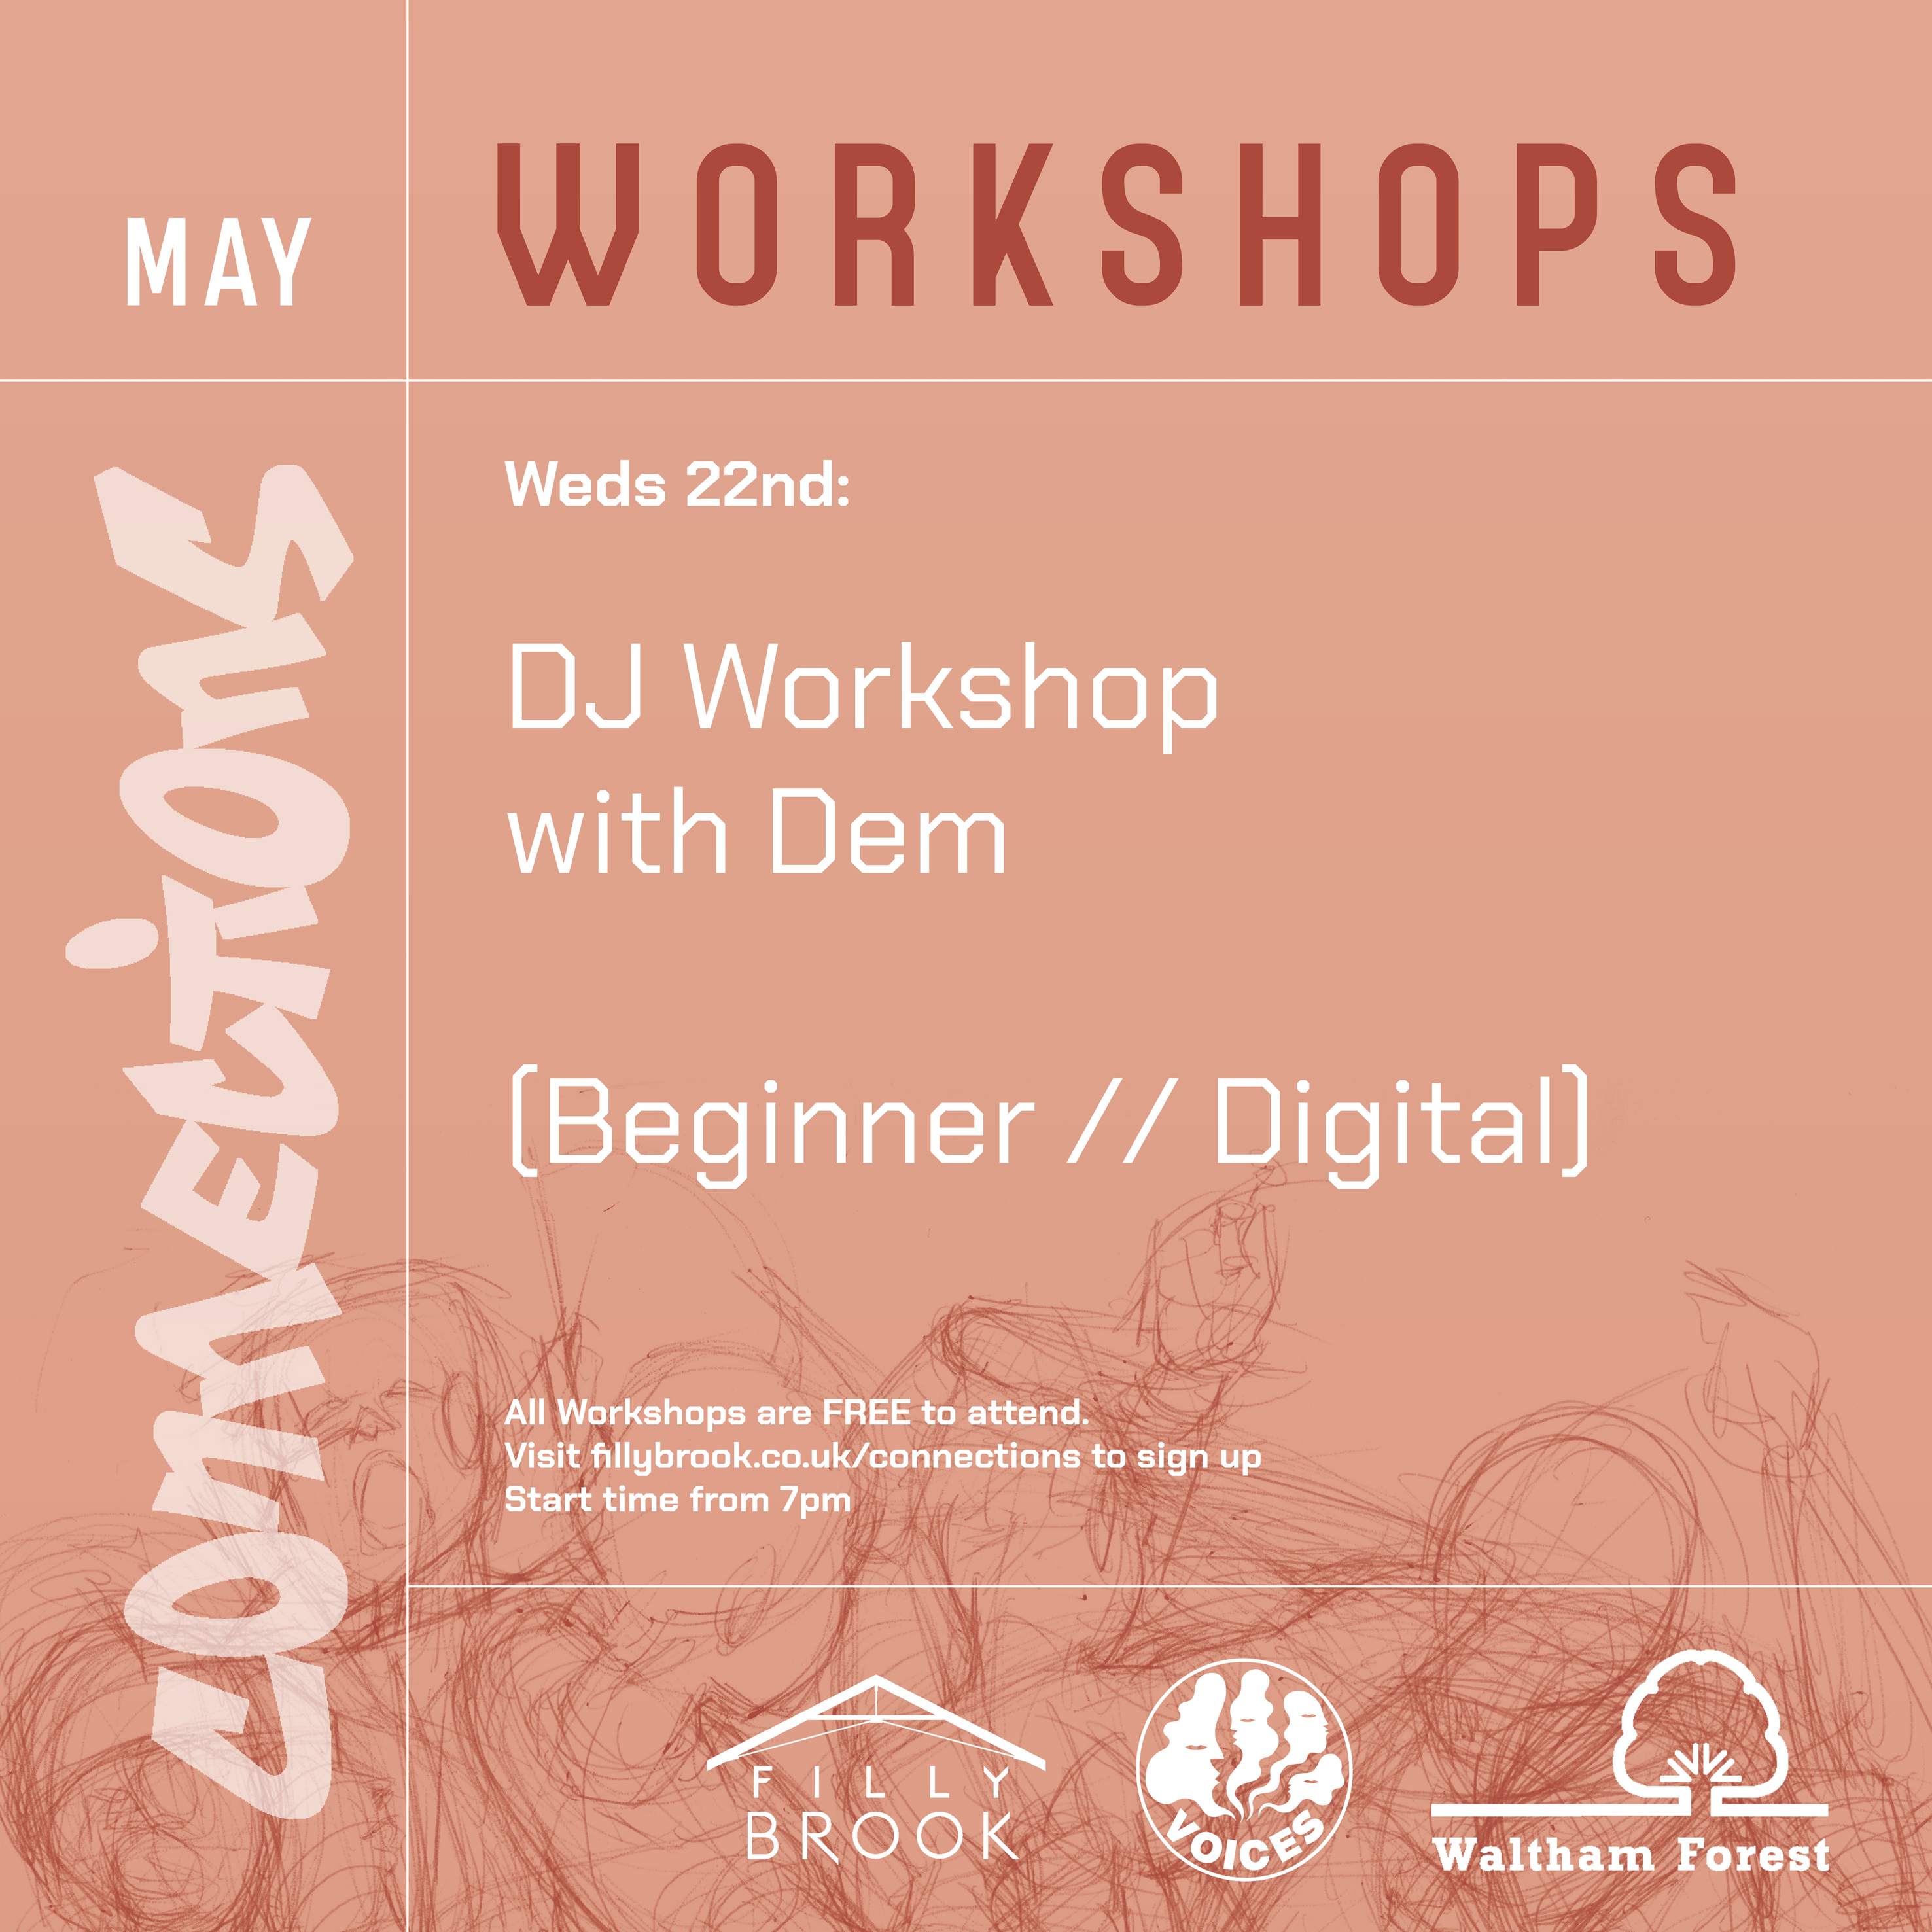 DJ Workshop with Dem – Beginner - フライヤー表